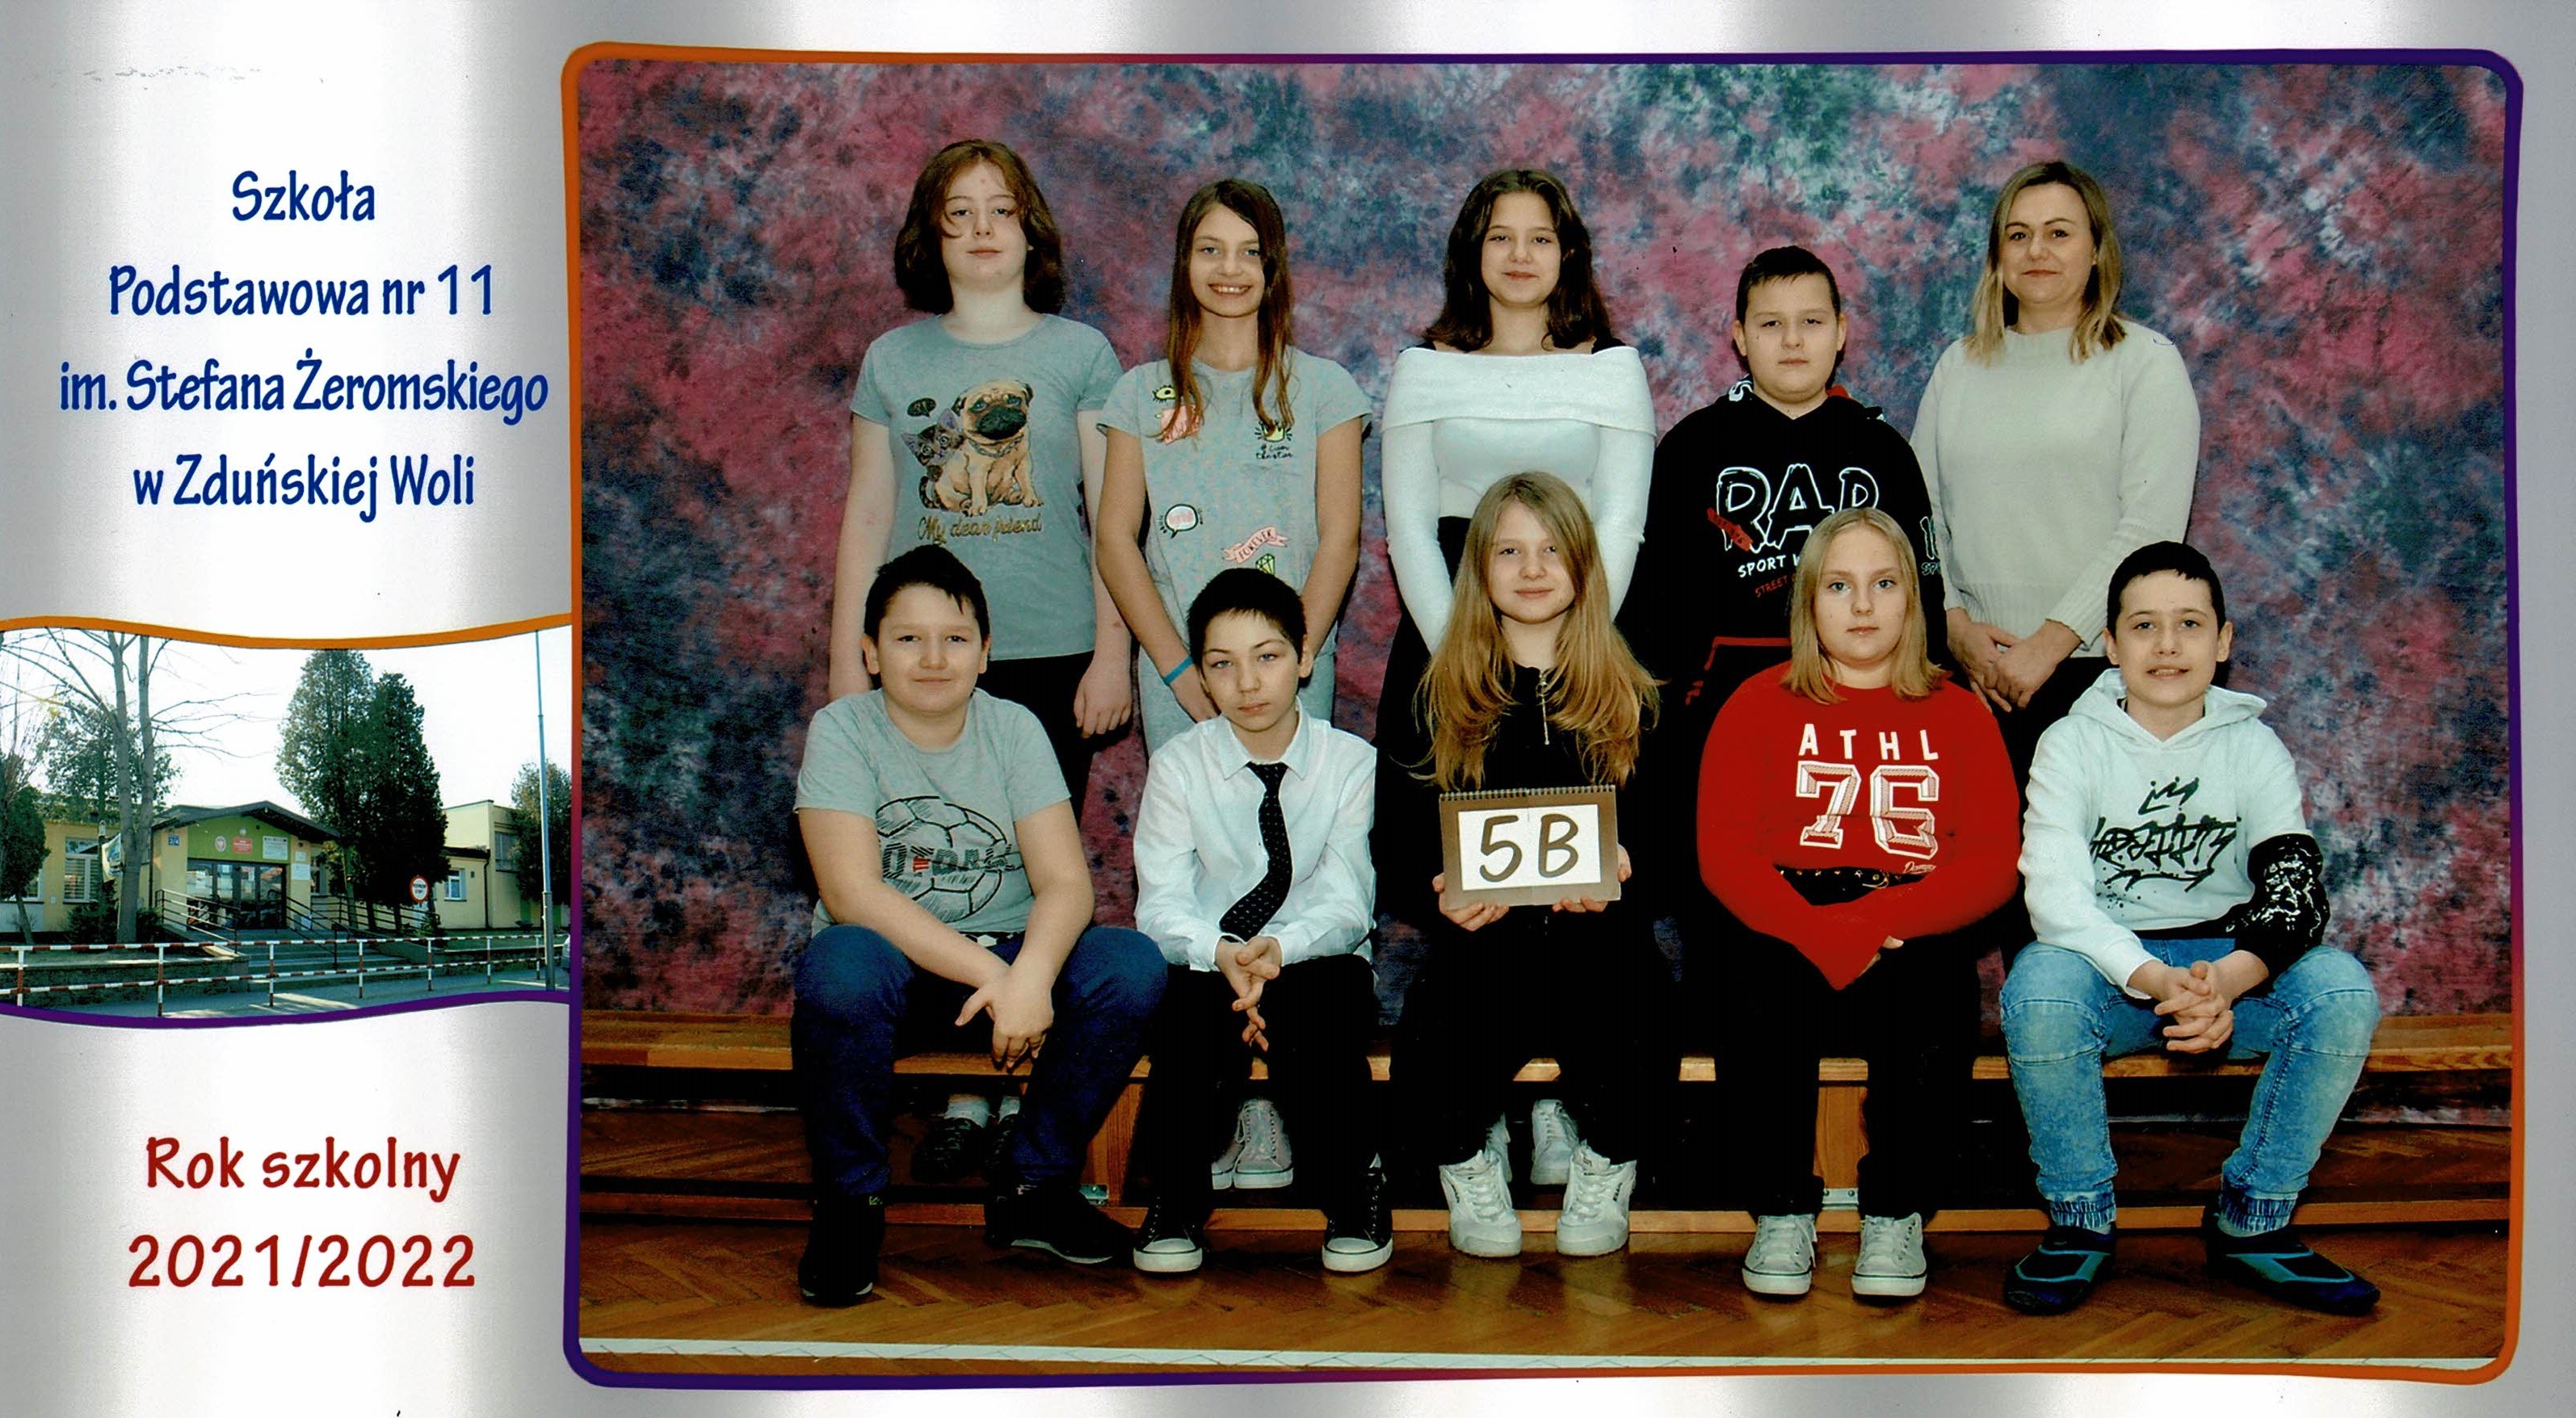 Uczniowie klasy 5b, dziewczynki i chłopcy siedzący na ławce z tabliczką "klasa 5b"